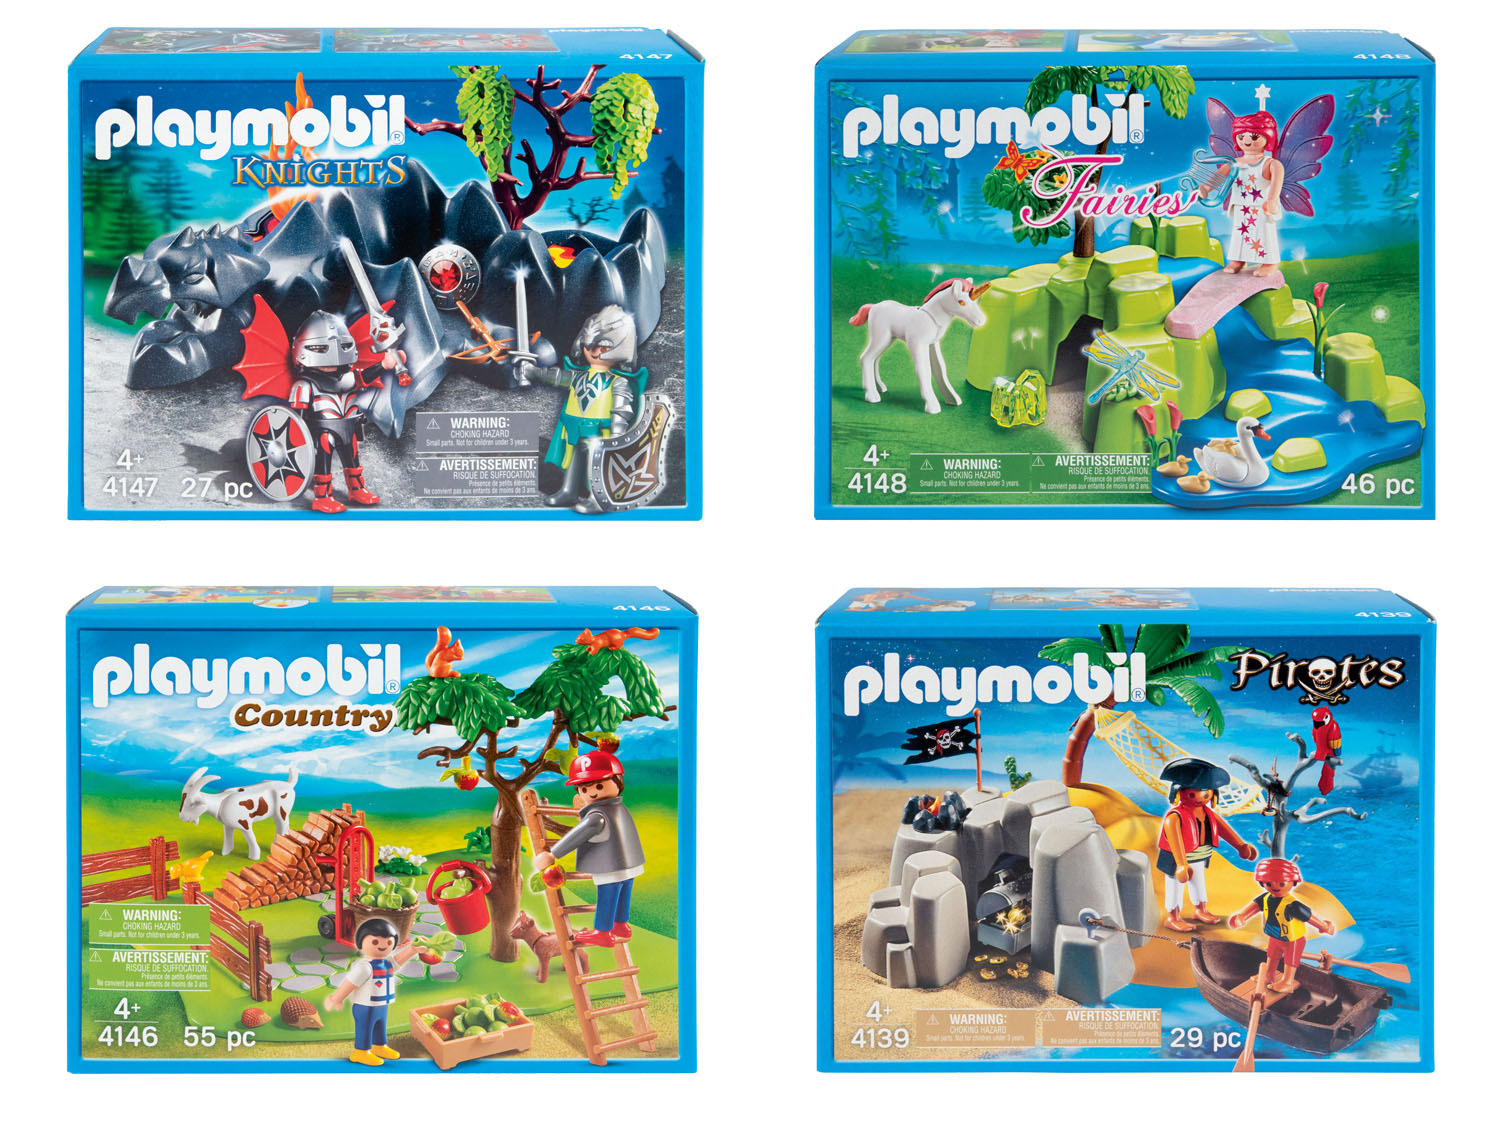 Playmobil Speelset kopen op Lidl.be